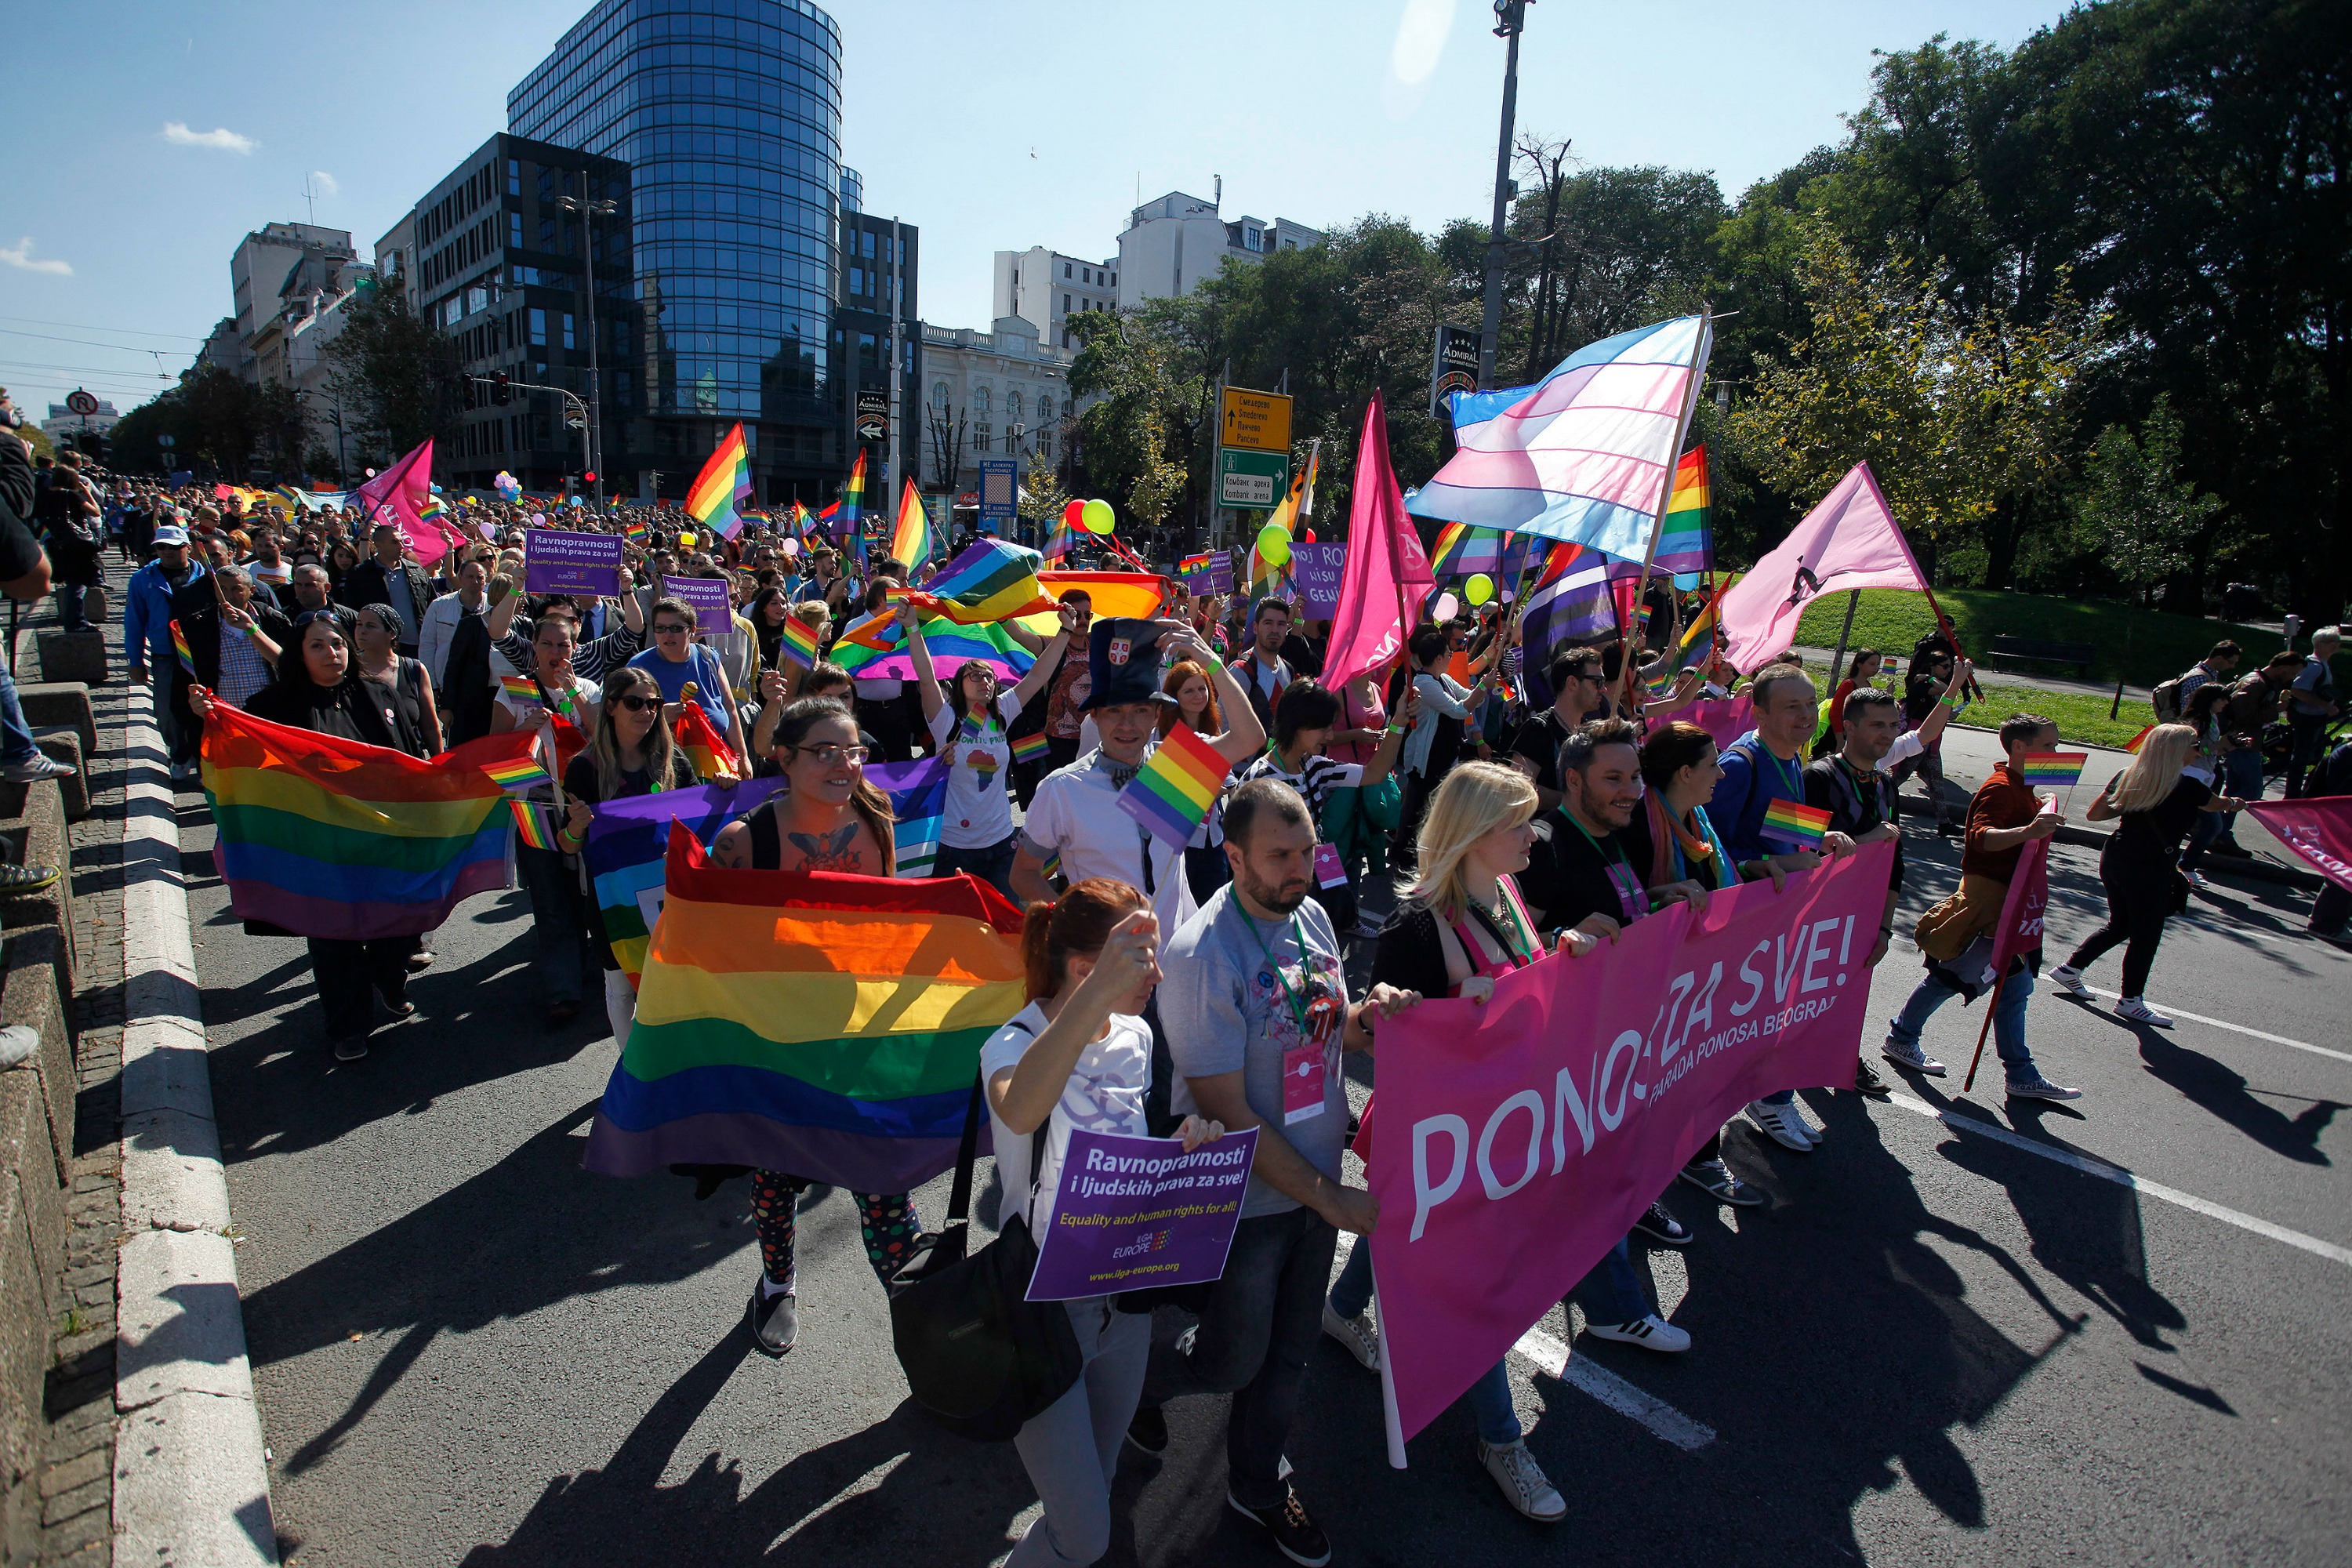 Incidensek nélkül zajlott a Pride felvonulás Belgrádban